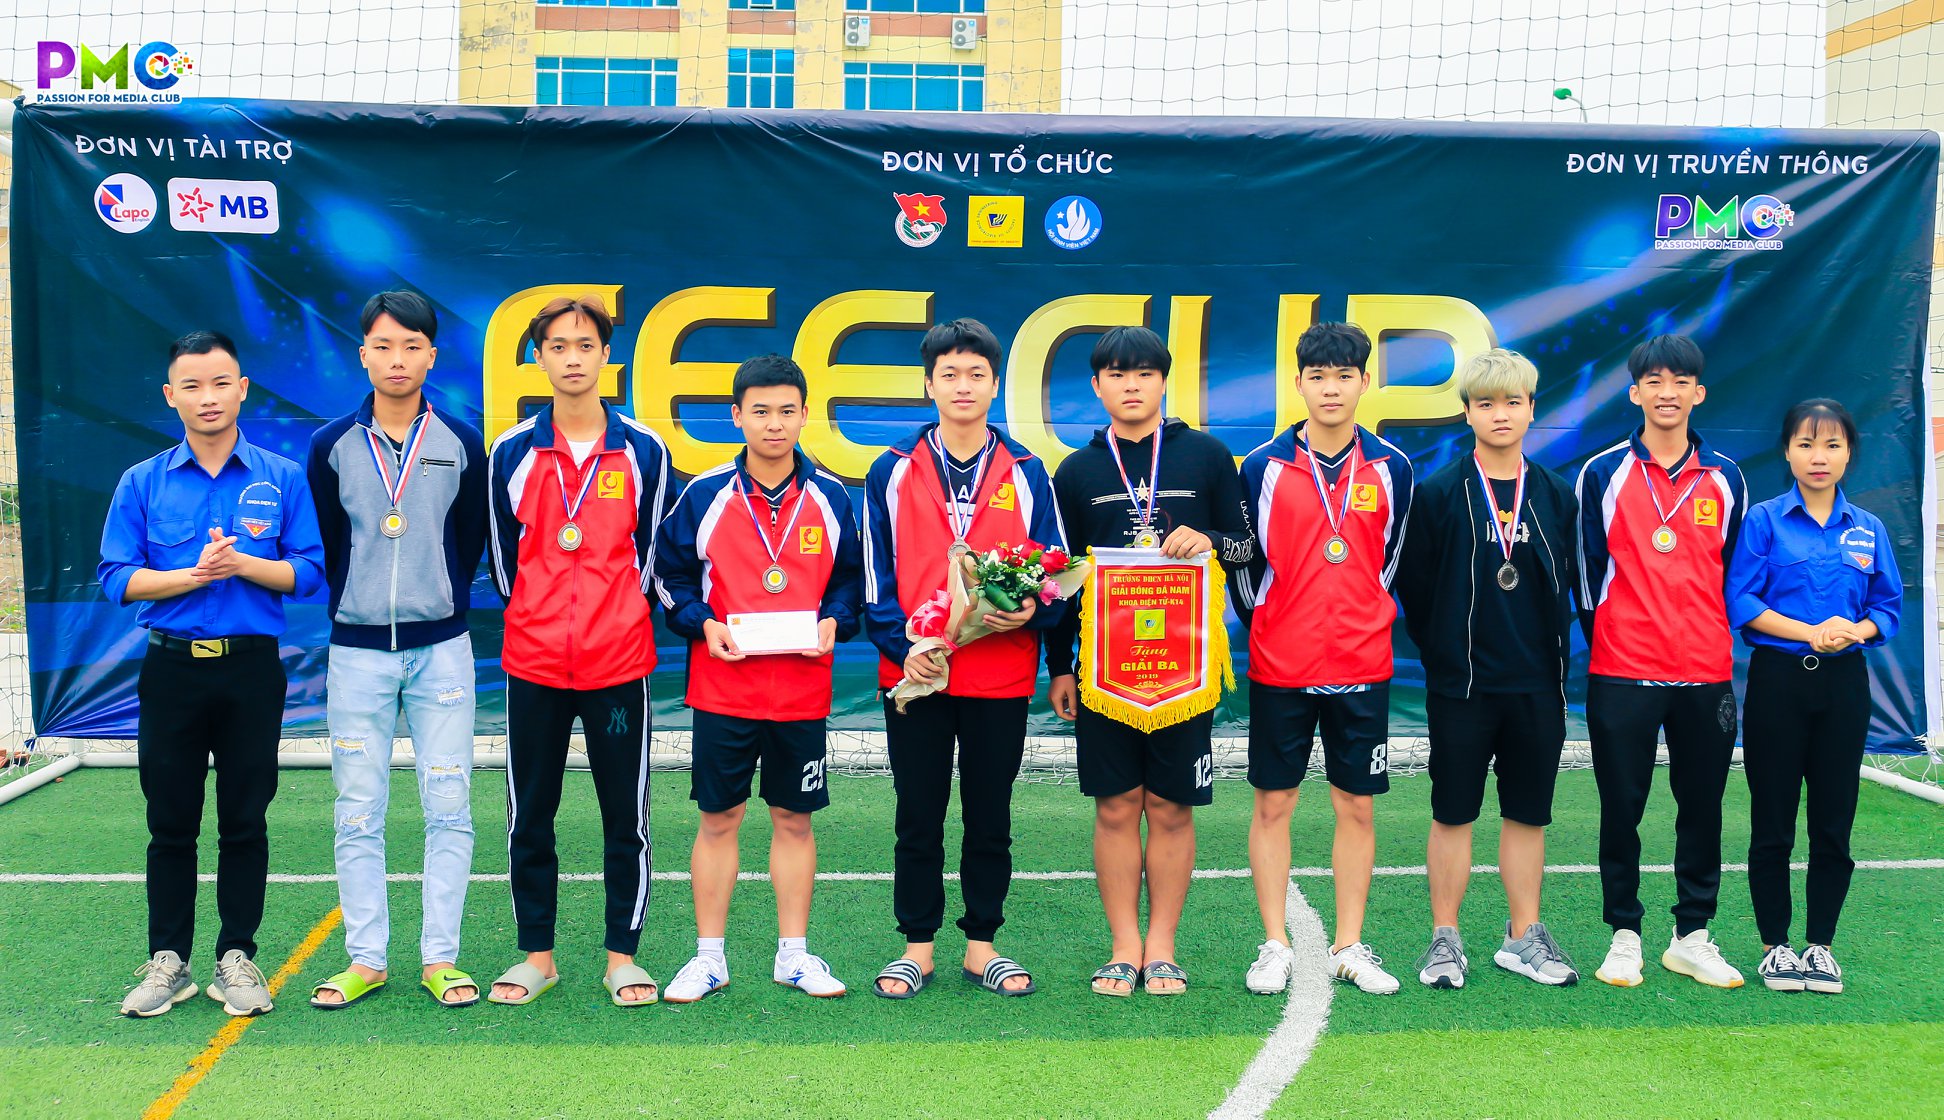 Chung kết giải bóng đá nam sinh viên khoa Điện tử cơ sở Hà Nam lần thứ V